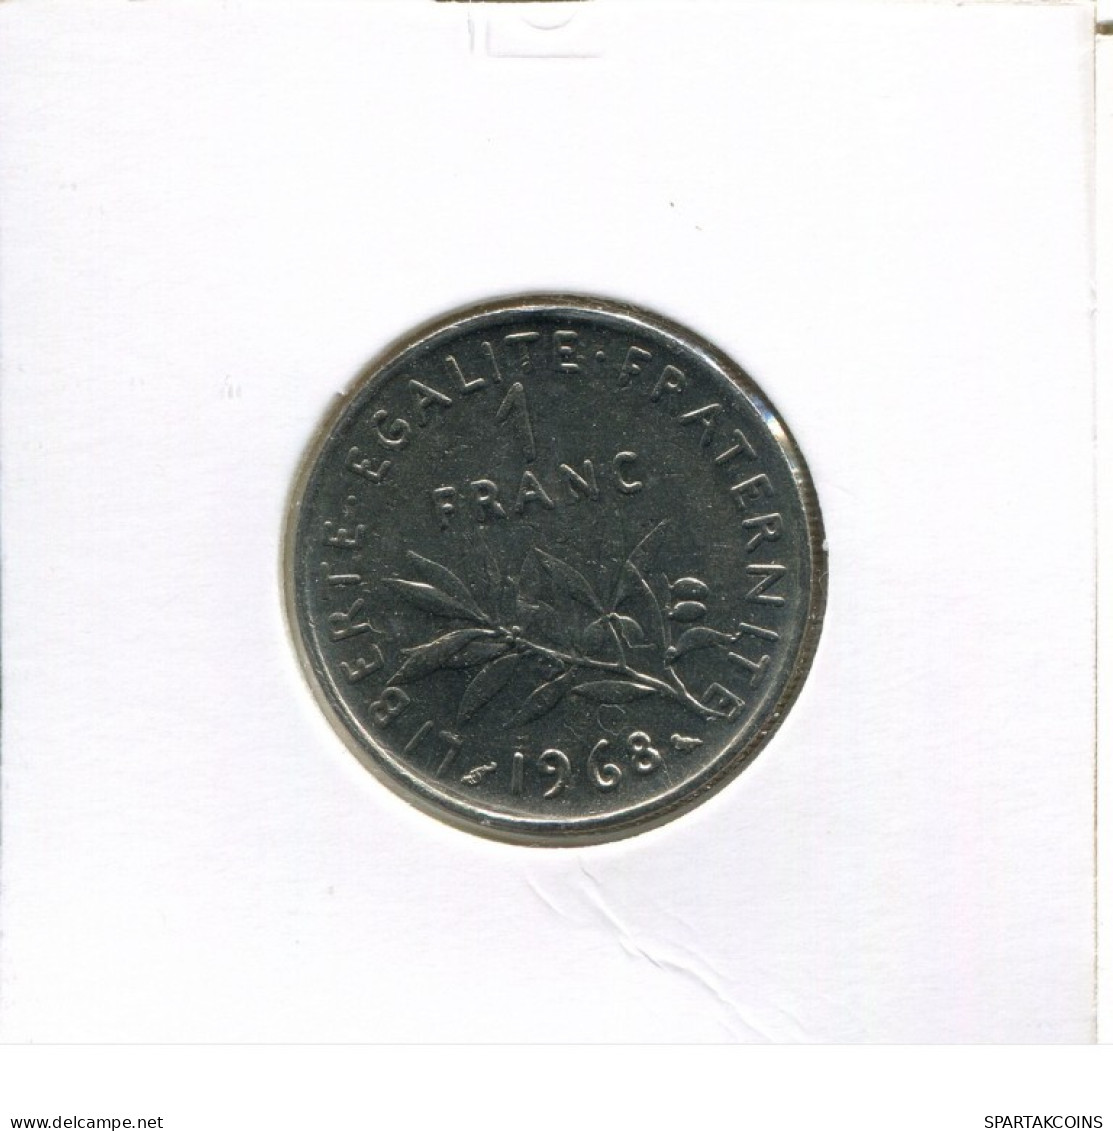 1 FRANC 1968 FRANCE Coin French Coin #AK561.U.A - 1 Franc